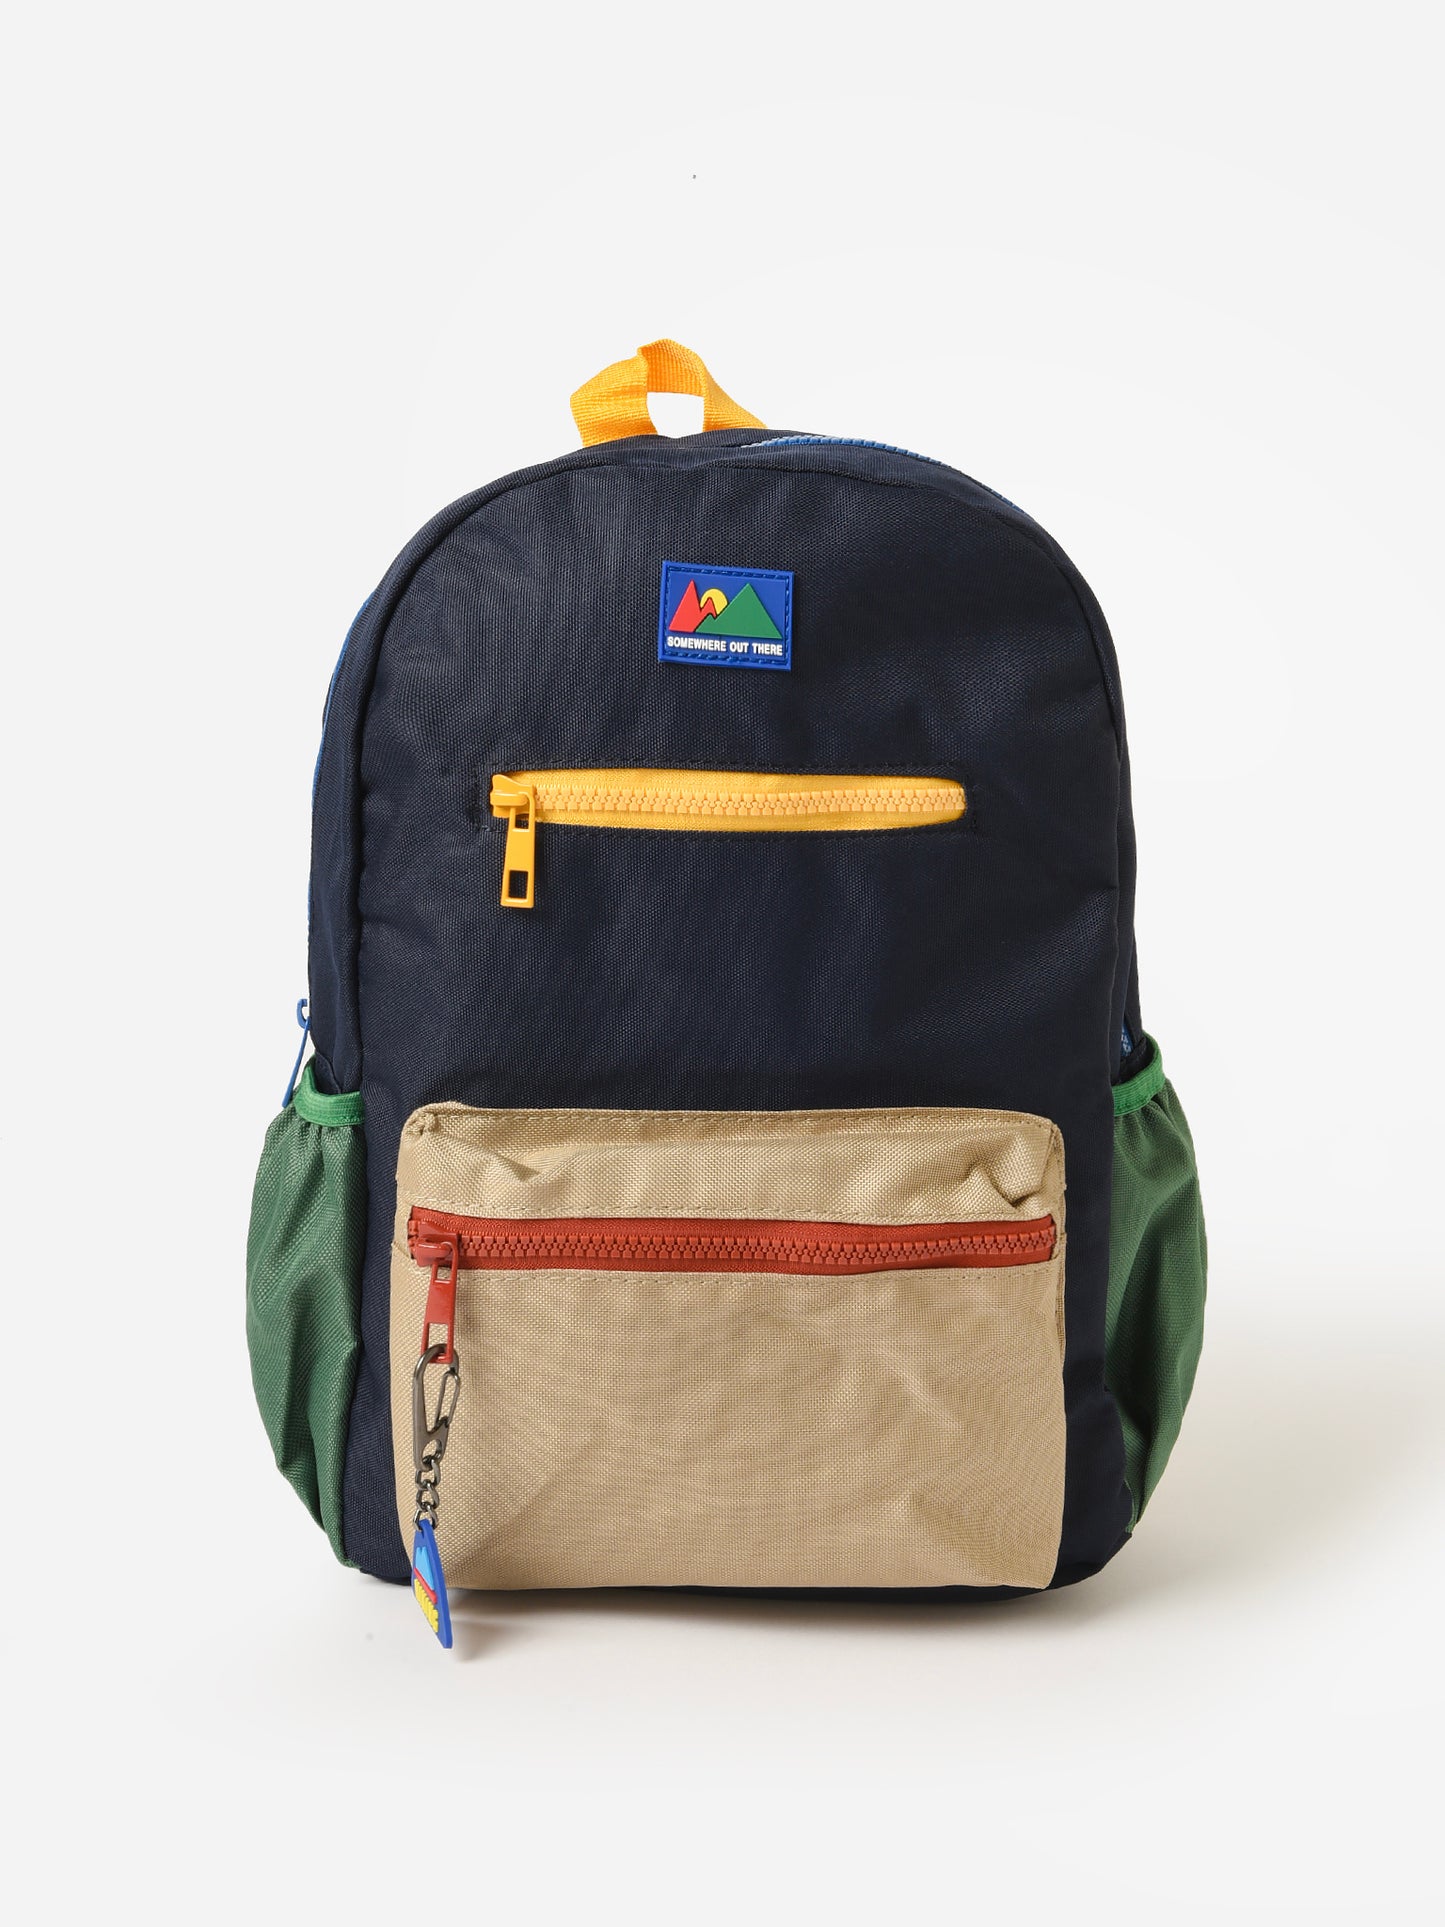 Mayoral Kids' Backpack